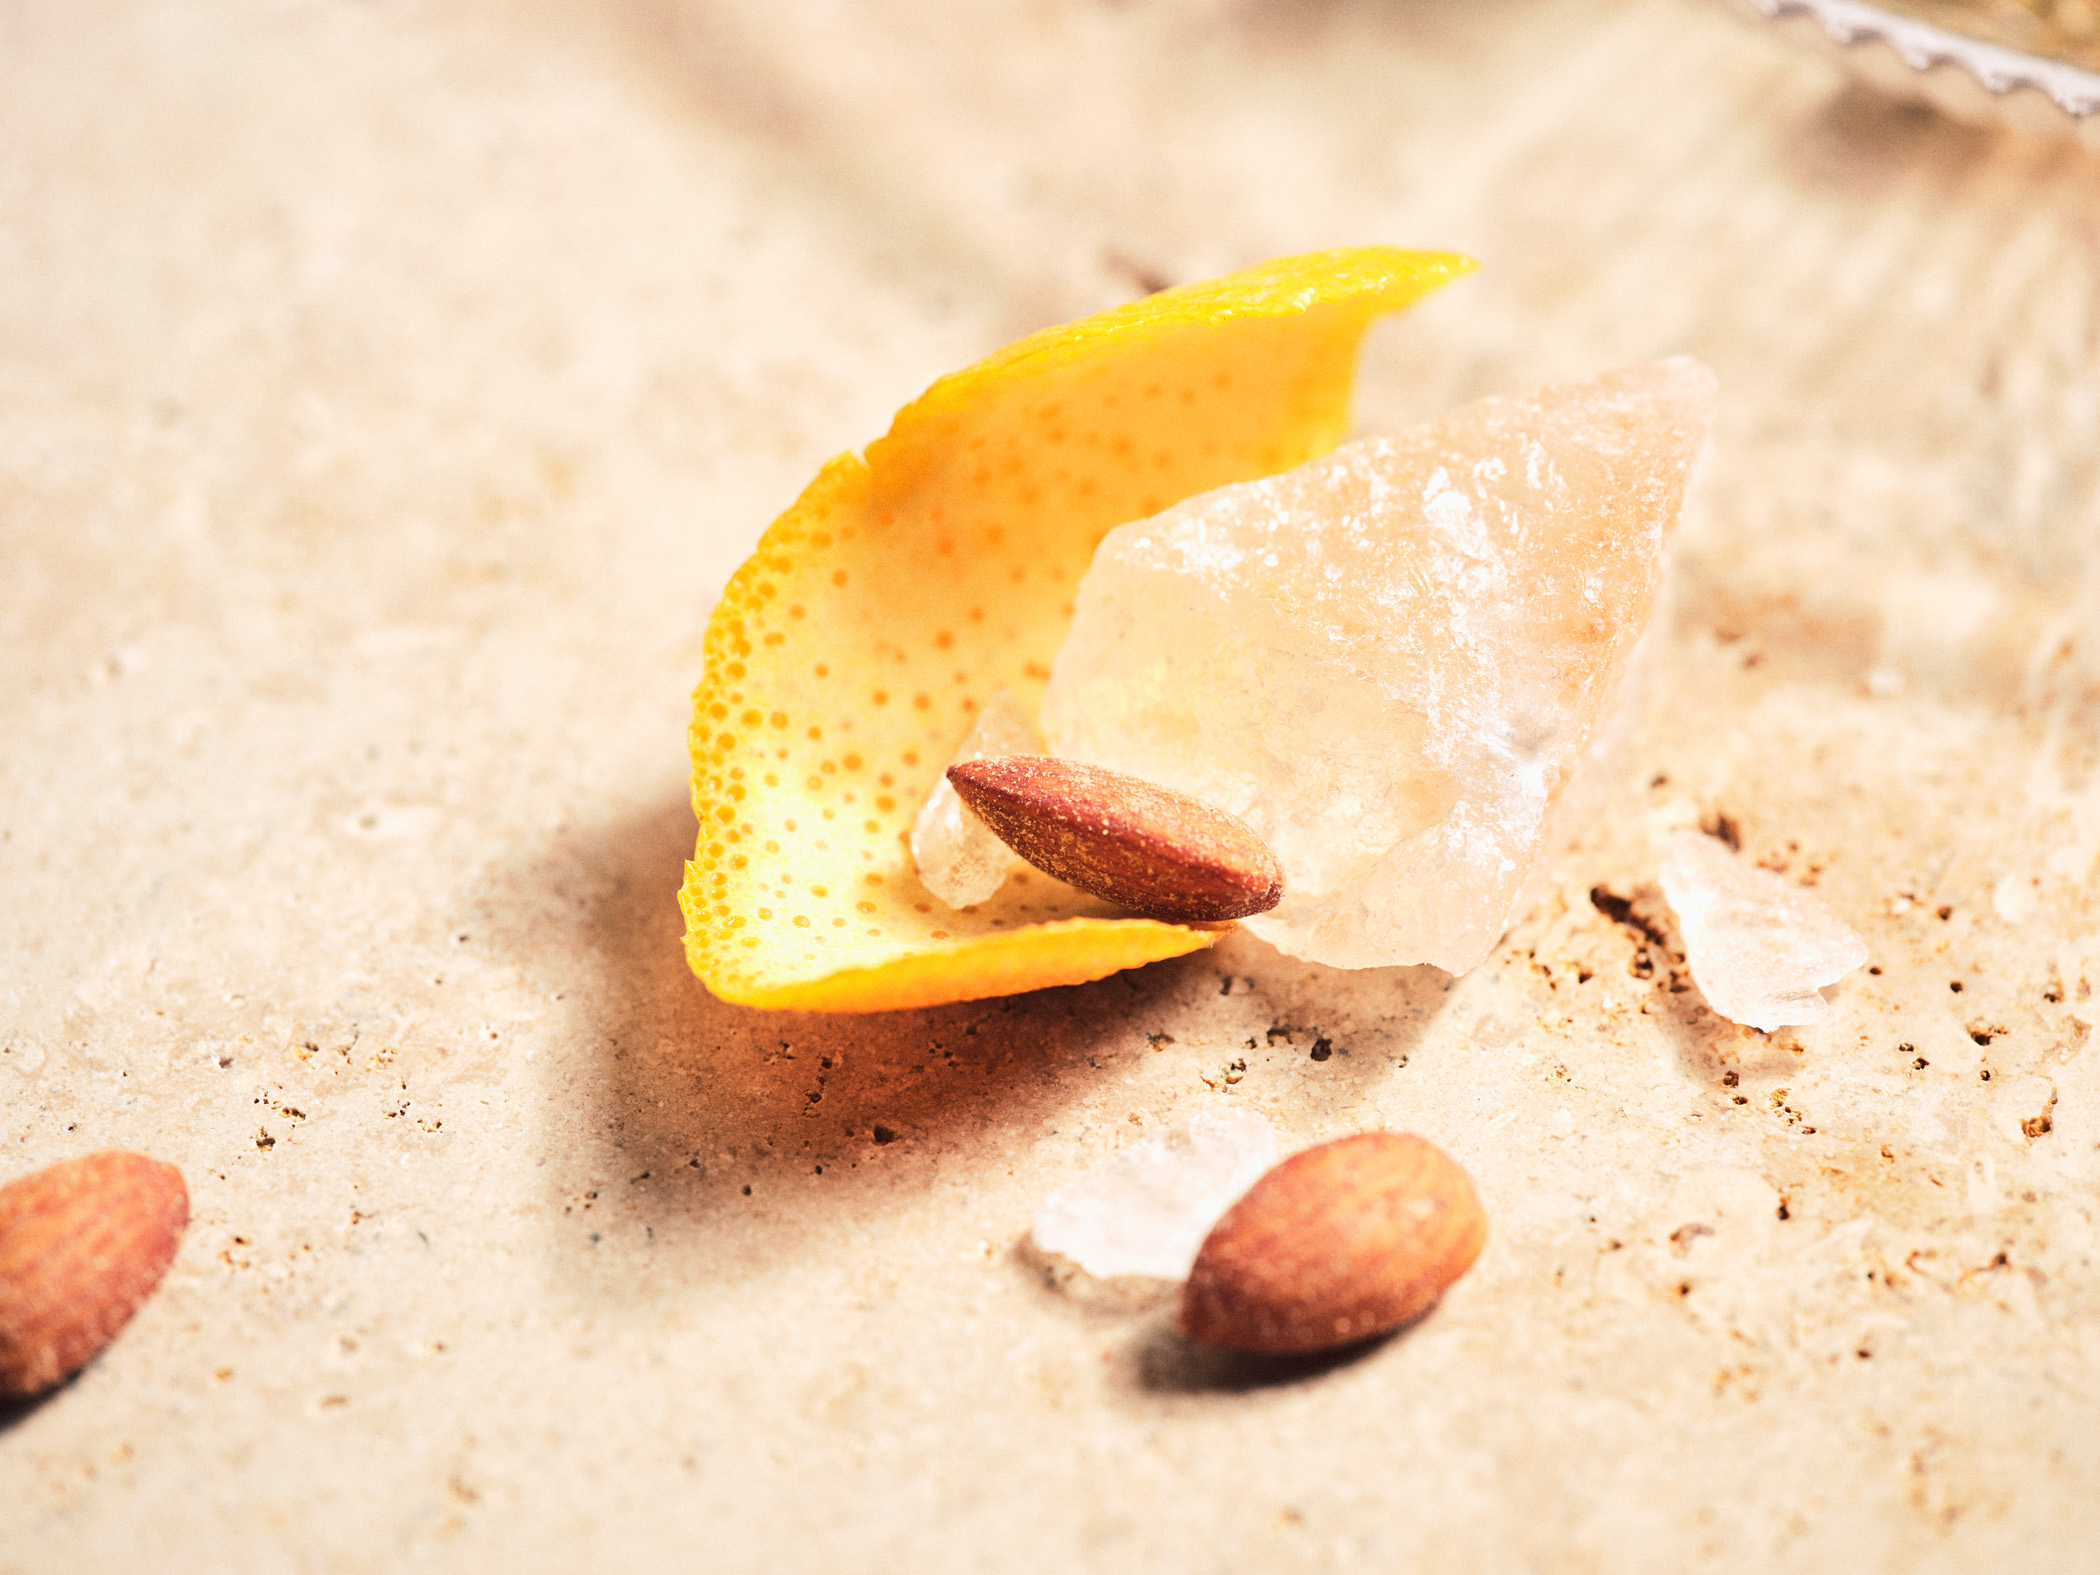 Zitronenschale mit Salzkristallen und geräucherten Mandeln - Foodstyling beschäftigt sich auch mit den feinen Details | Studio Hackenberg Kiel